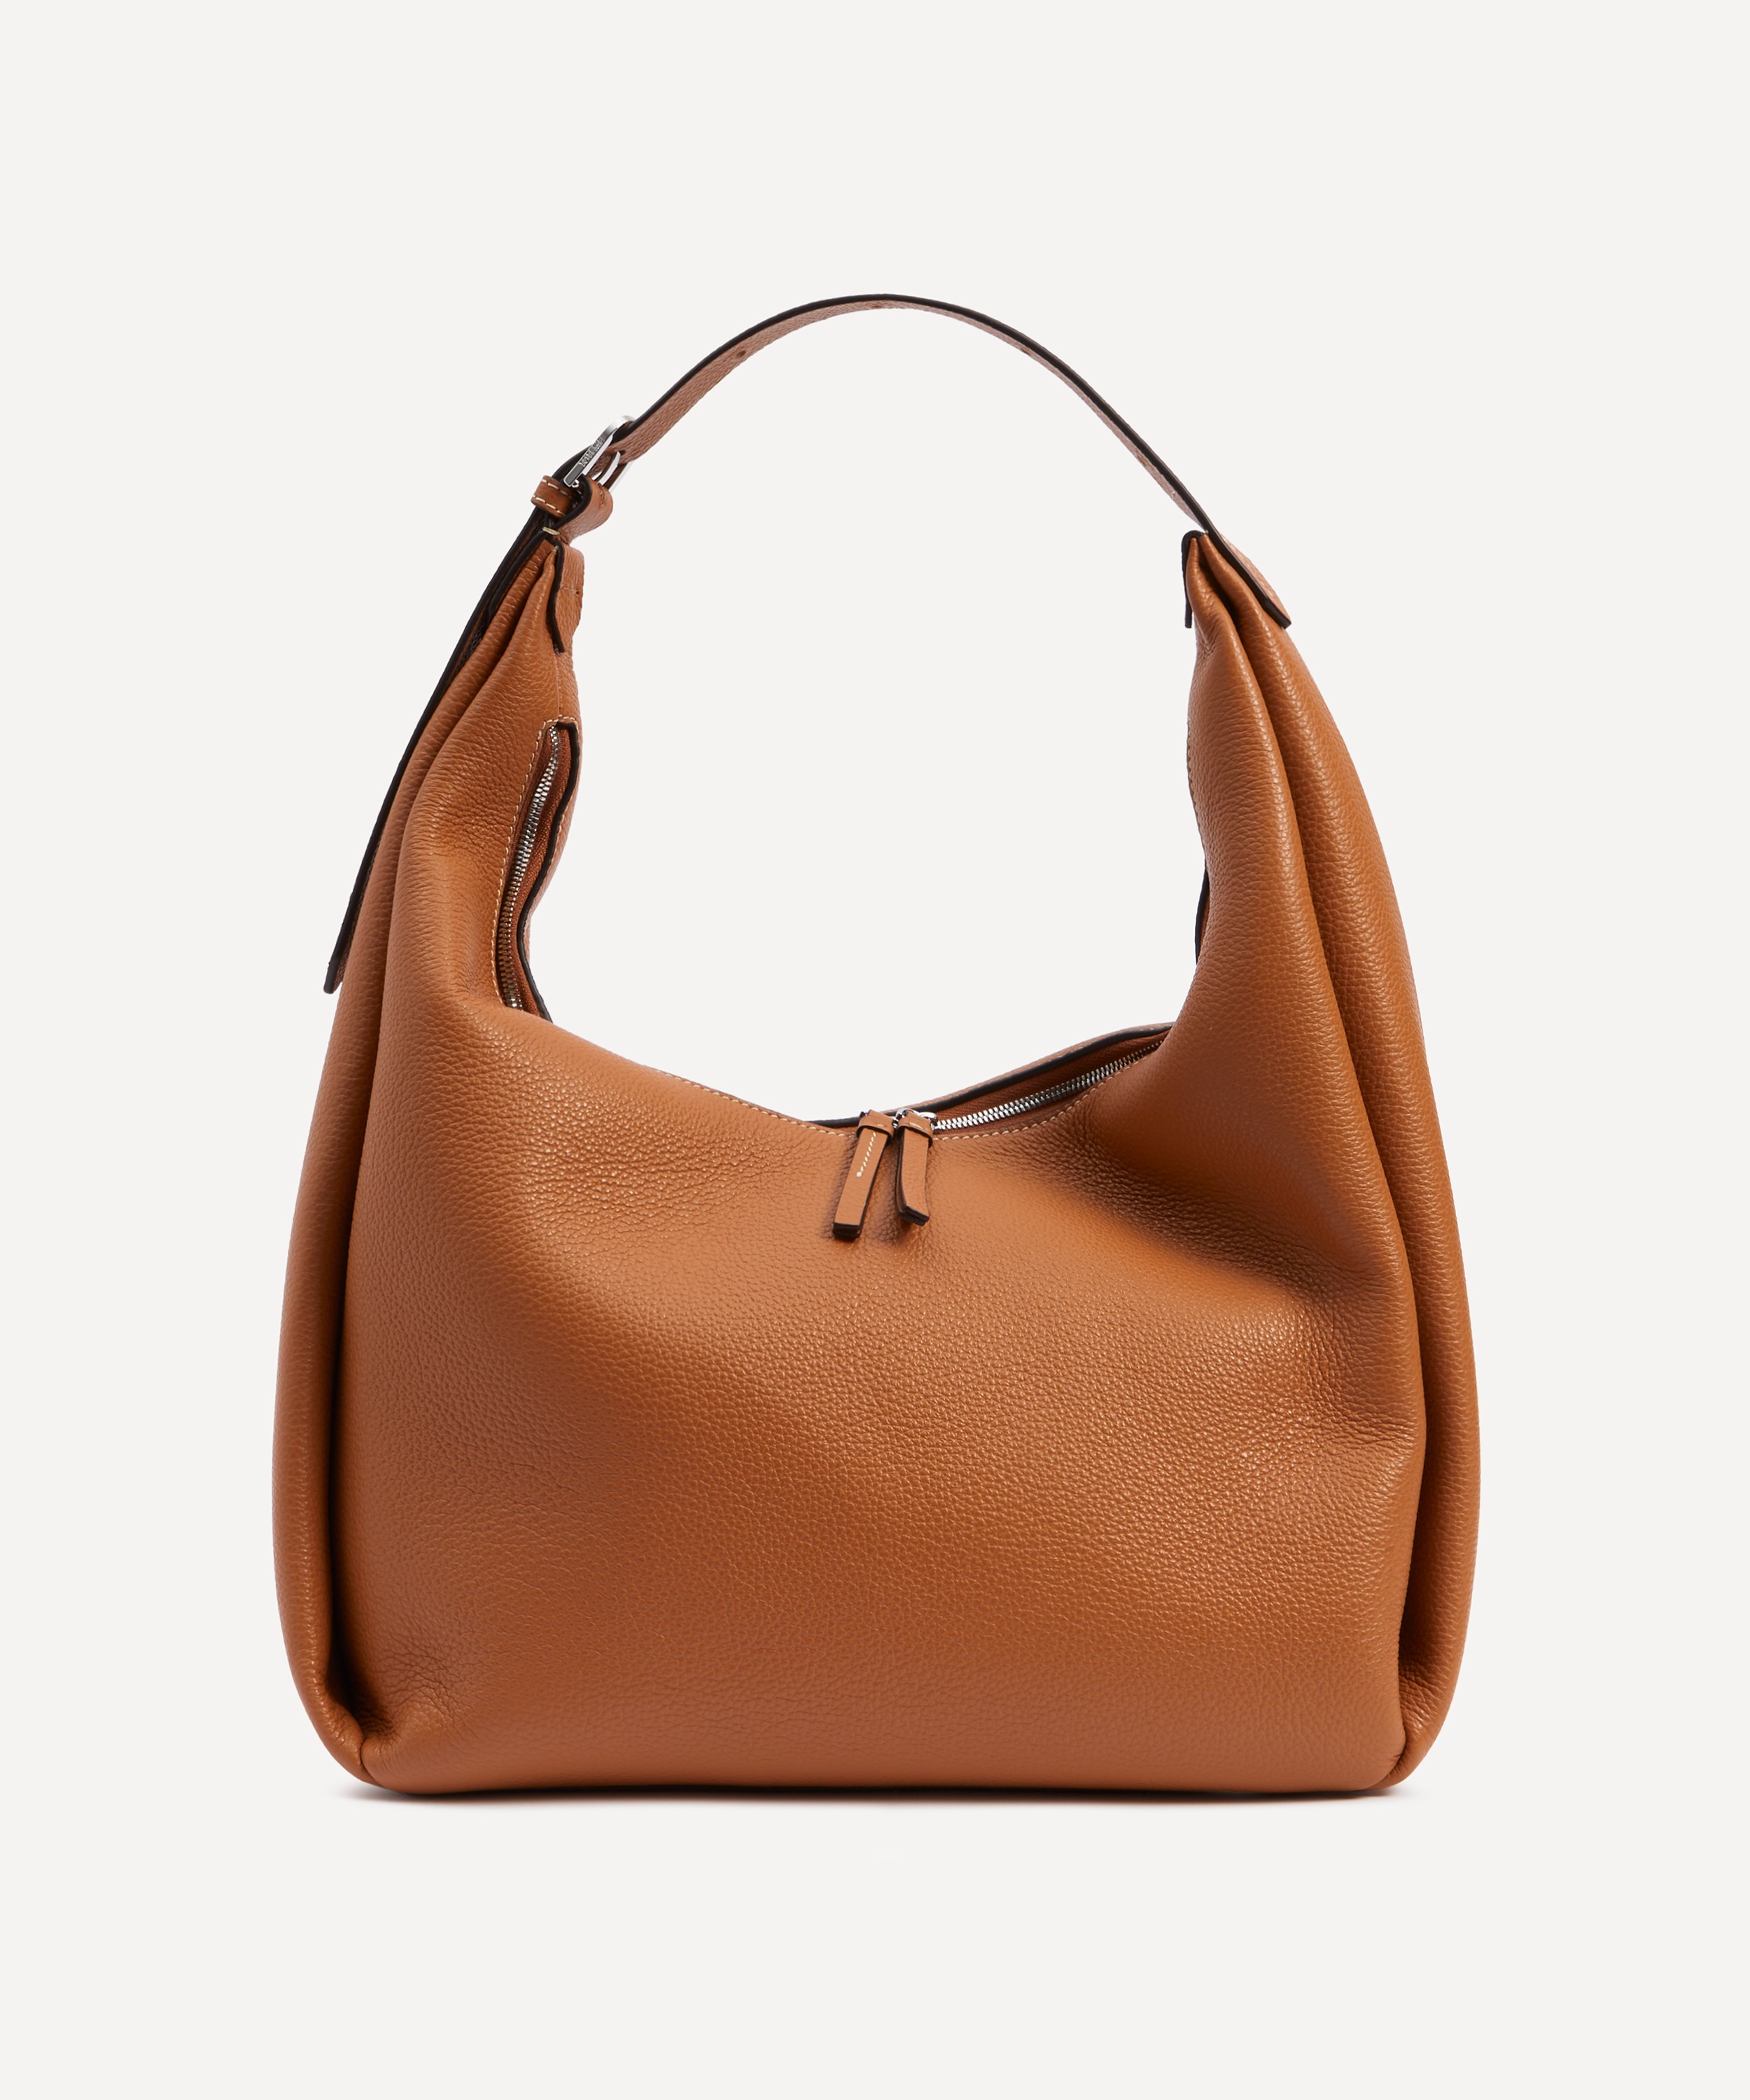 Toteme - Belt Hobo Milk Grain Leather Shoulder Bag